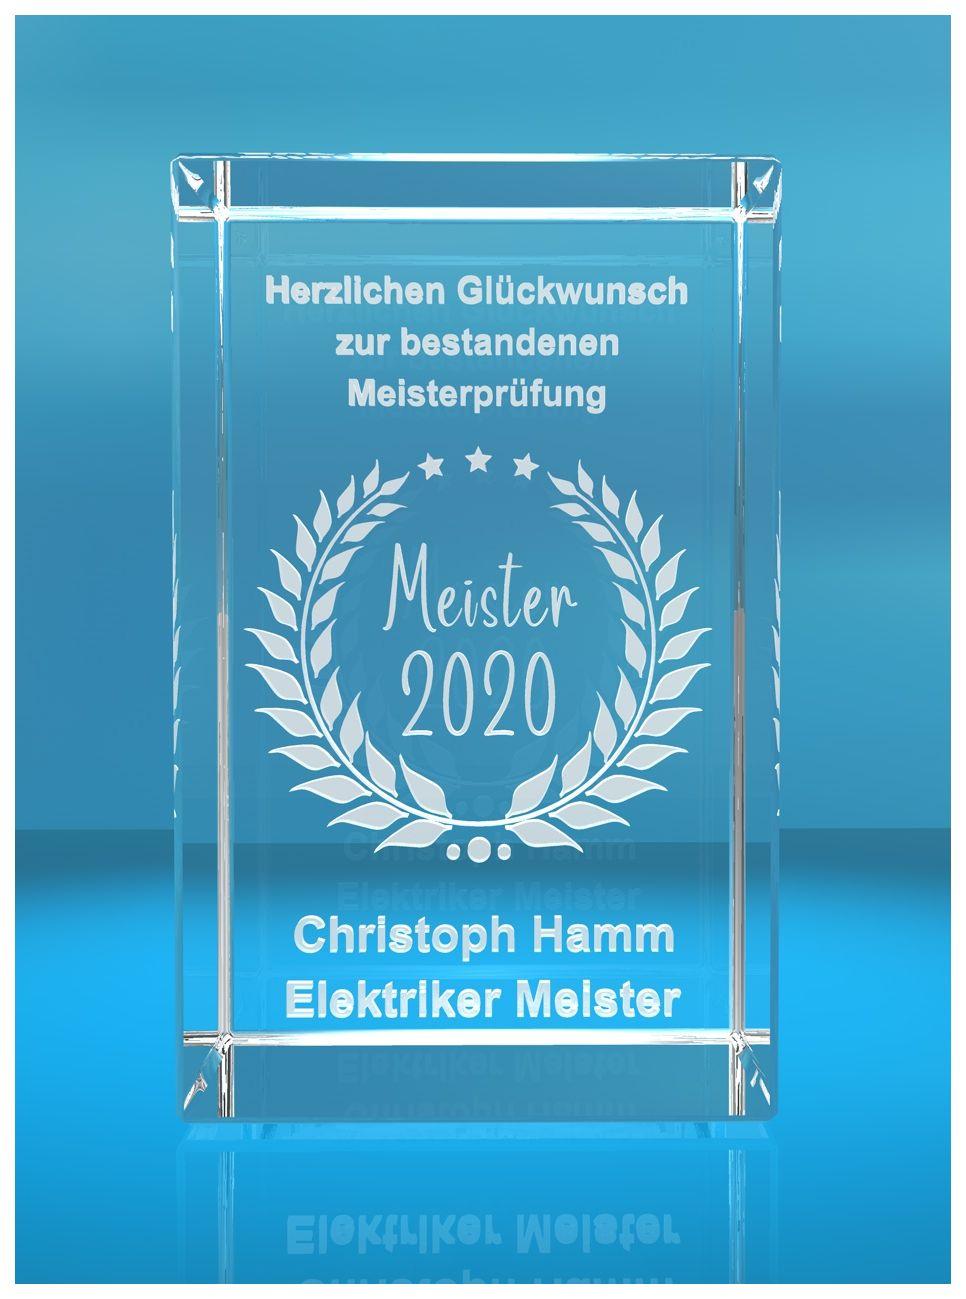 3D Glasquader   Meister 2020   Glückwunsch mit Wunschtext   Geschenk zur Meisterprüfung